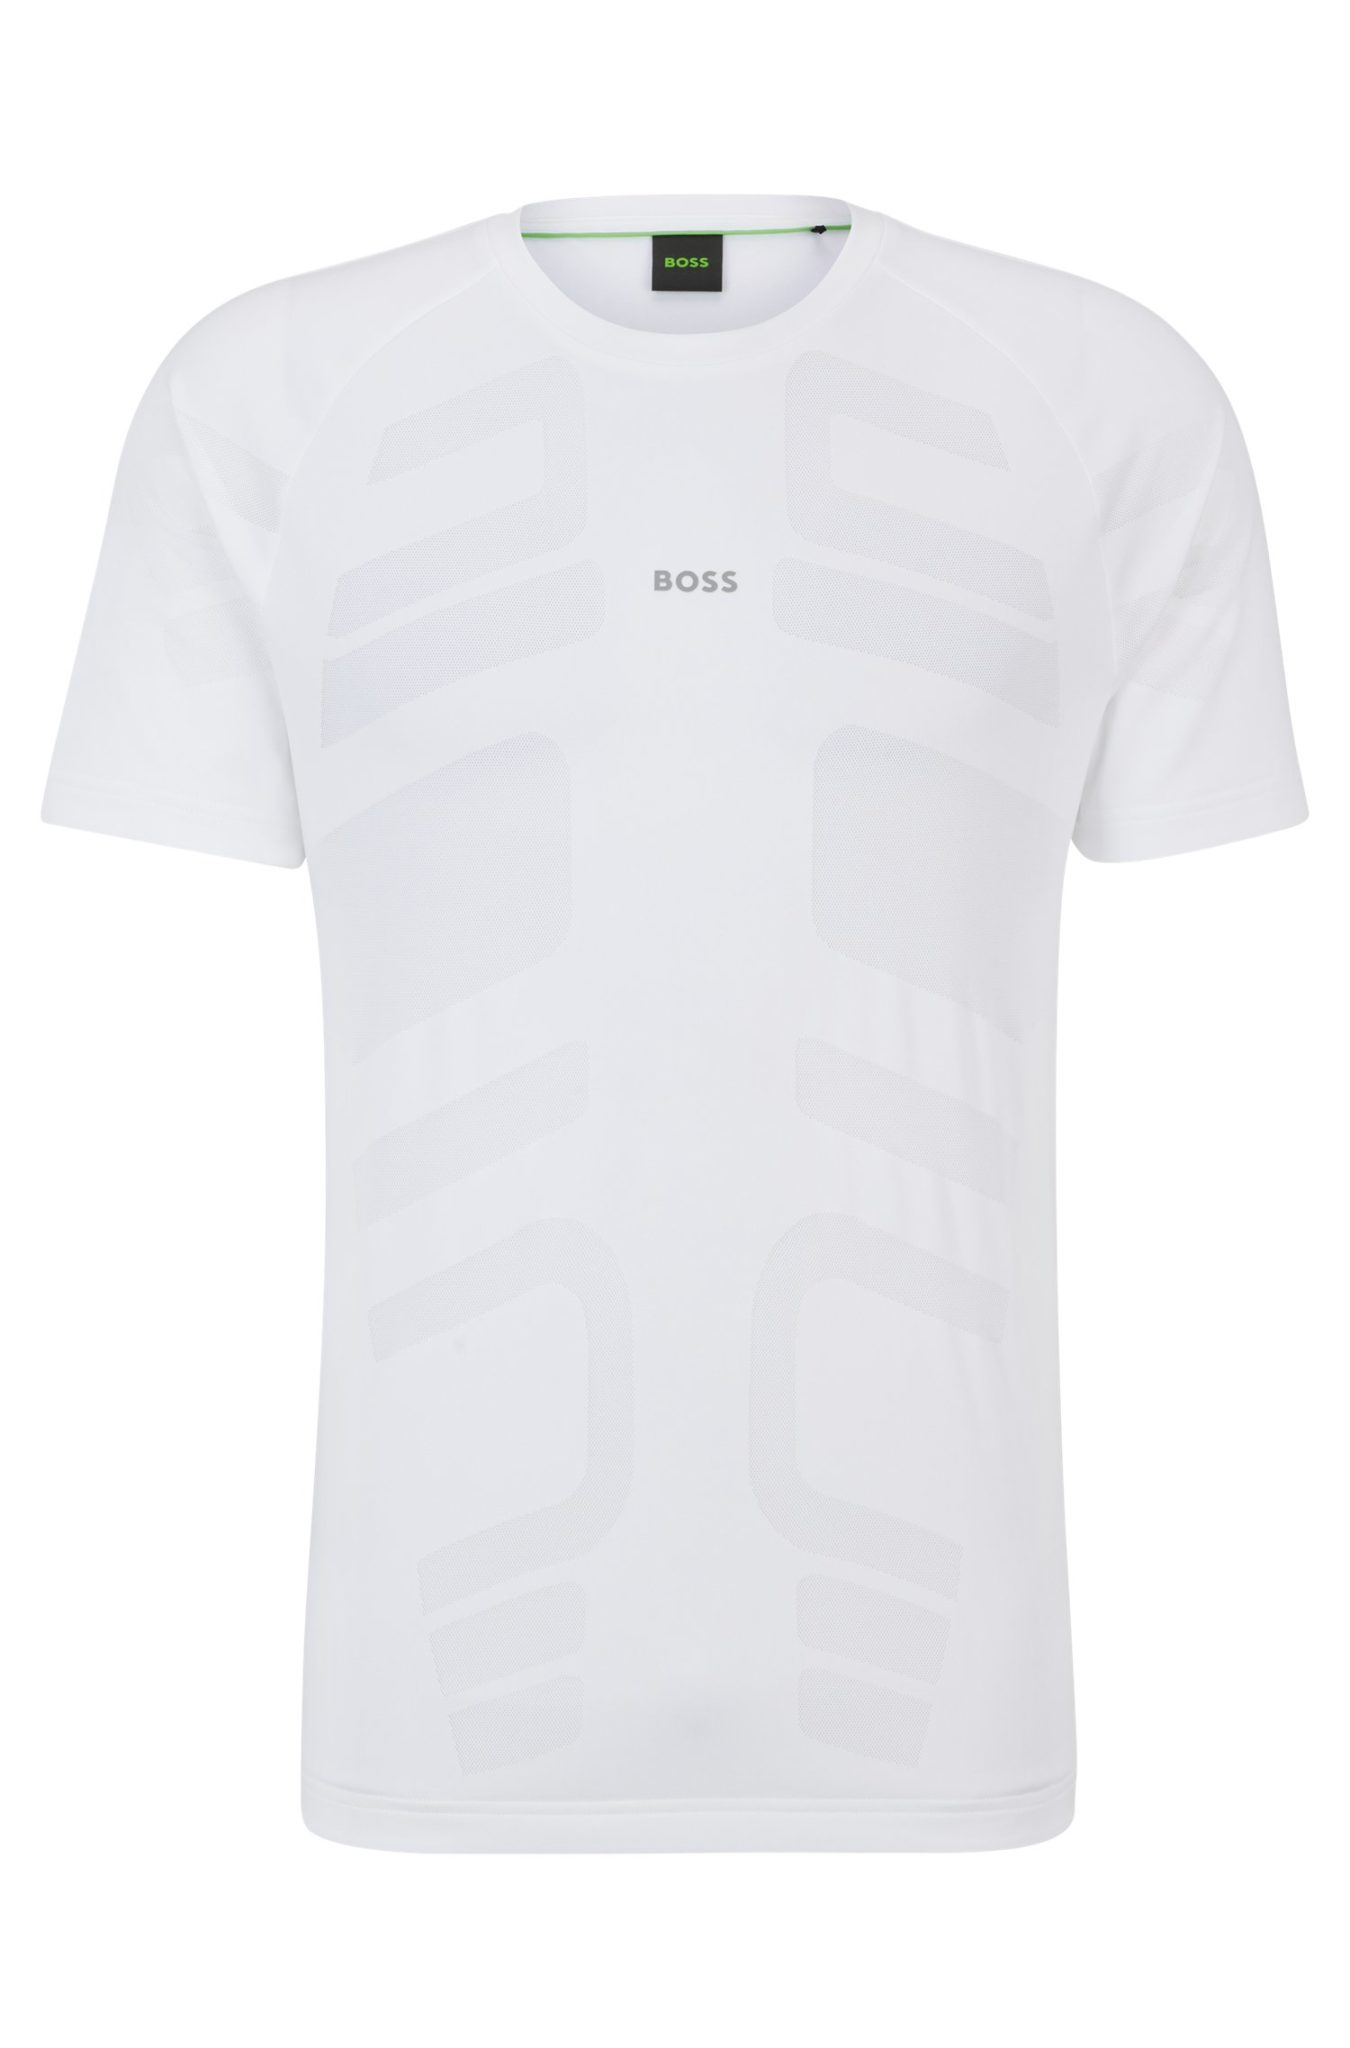 Hugo Boss T-shirt en jacquard performant avec logo réfléchissant décoratif